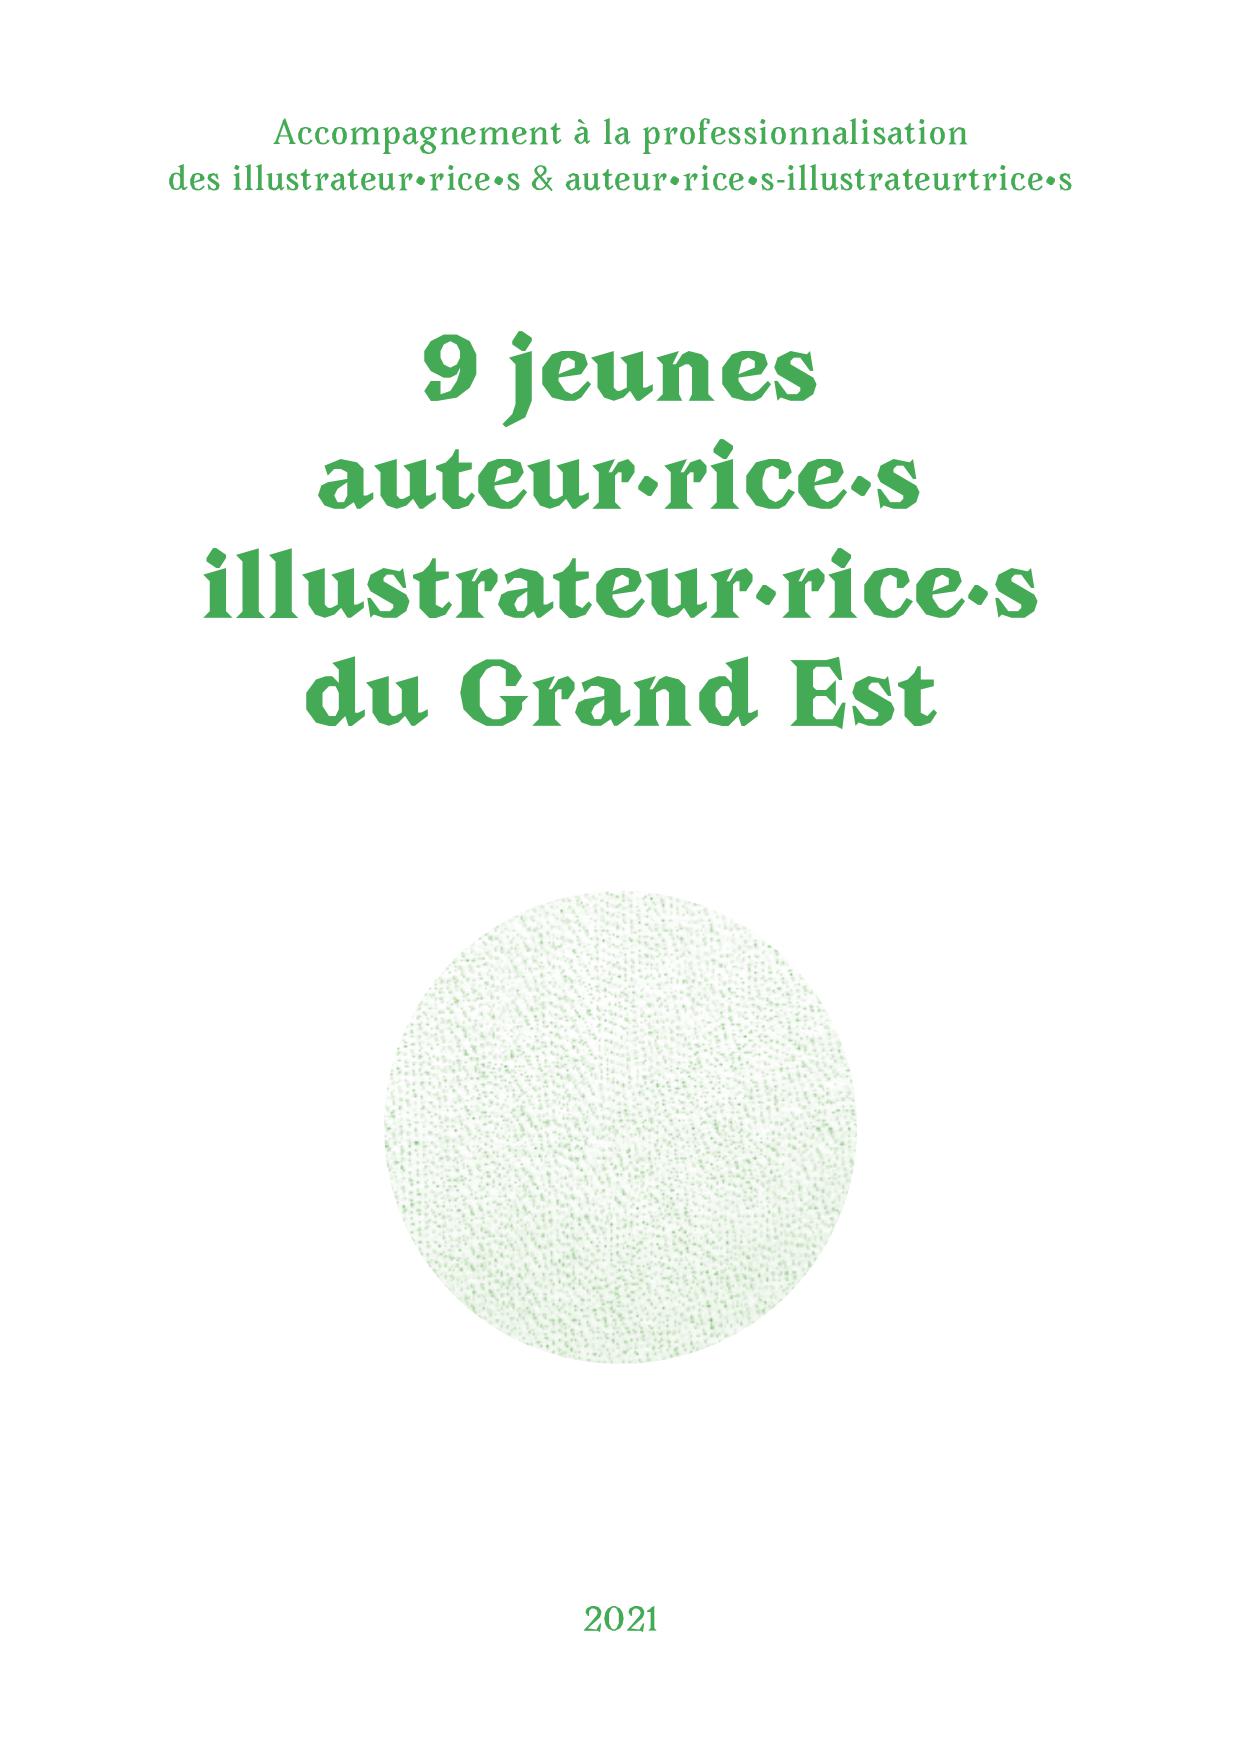 Région Grand Est / Accompagnement à la professionnalisation des illustrateurs et auteurs-illustrateurs